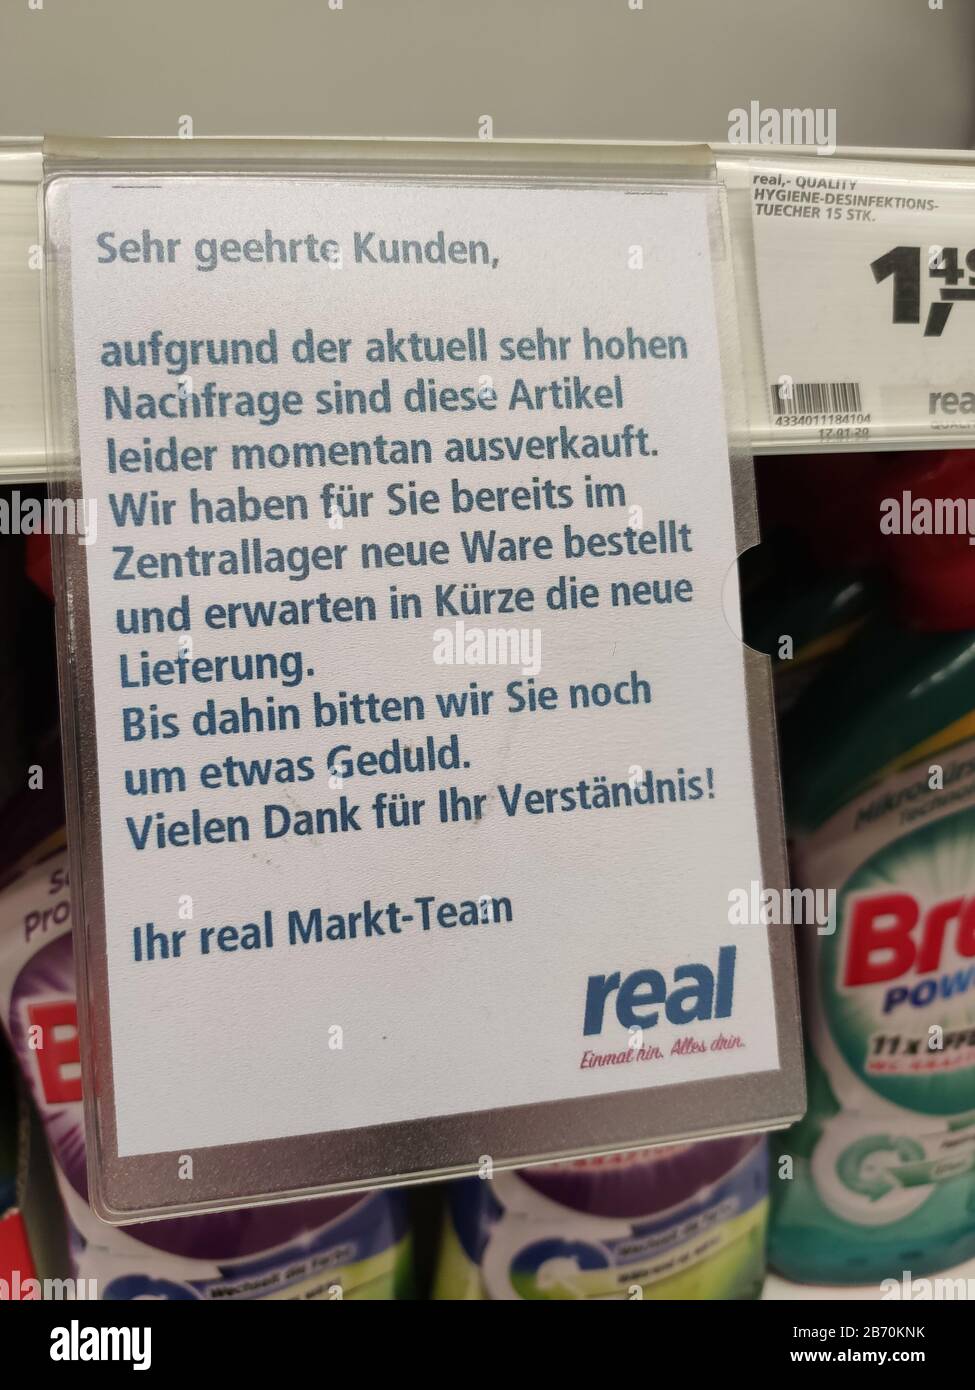 Berlin, Deutschland - 12. März 2020: Ausverkauftes Zeichen für Desinfektionsmittel Sagrotan im Supermarkt-Real in Berlin wegen Großkäufen wegen Coronavirus Stockfoto